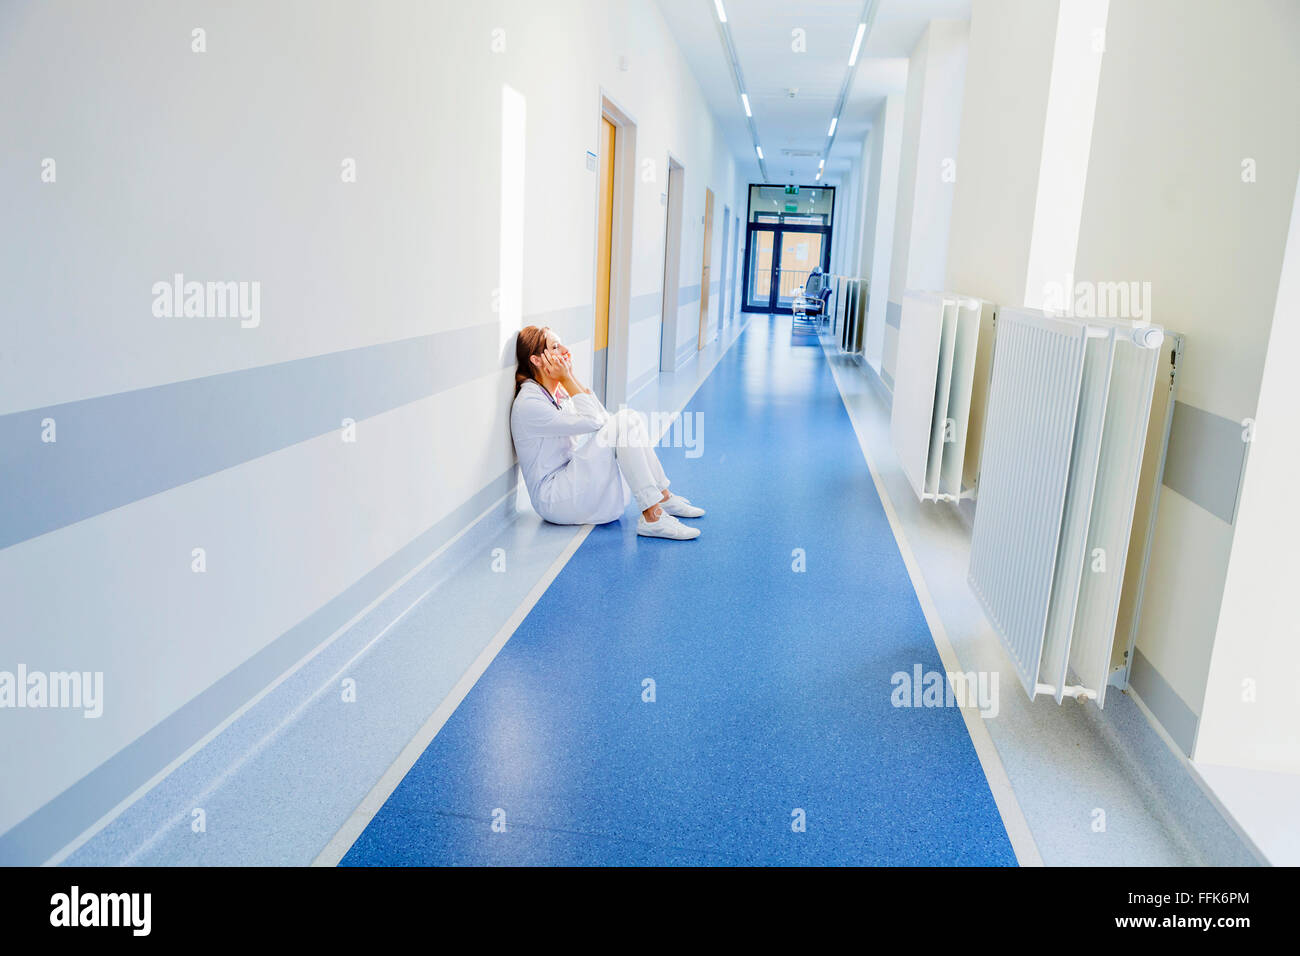 Travailleur de la santé surchargés de sitting on floor in hospital corridor Banque D'Images